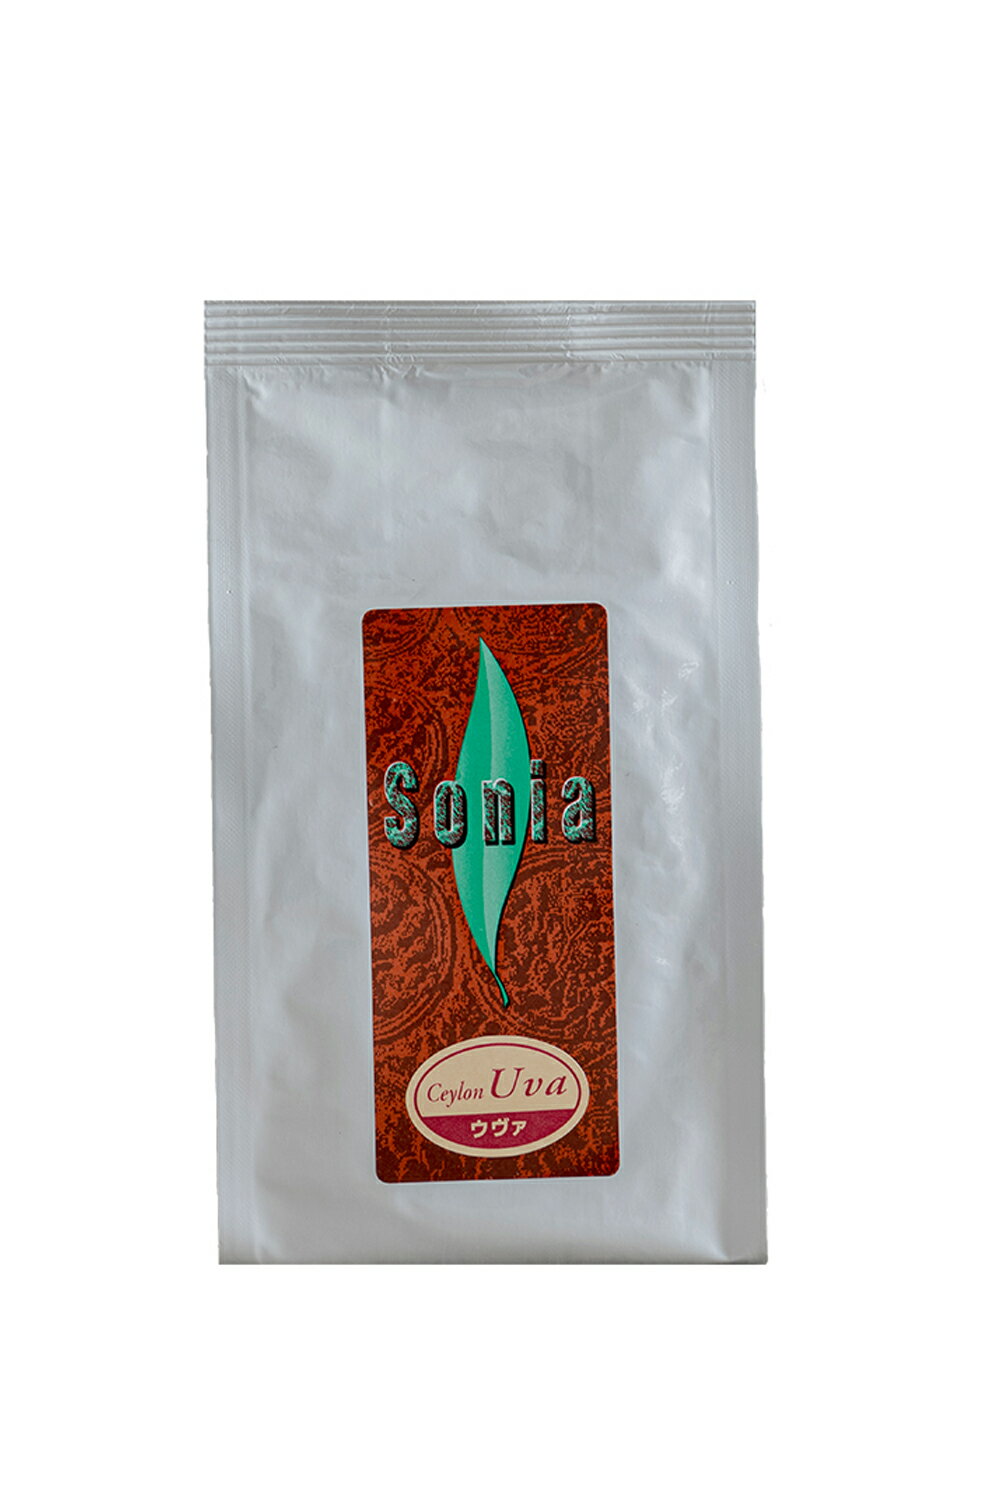 有機【ウヴァ】オーガニック 高級紅茶100g×3袋 茶葉等級 BOP品質重視のアルミ袋入り産地 スリランカ セカンドフラッシュ